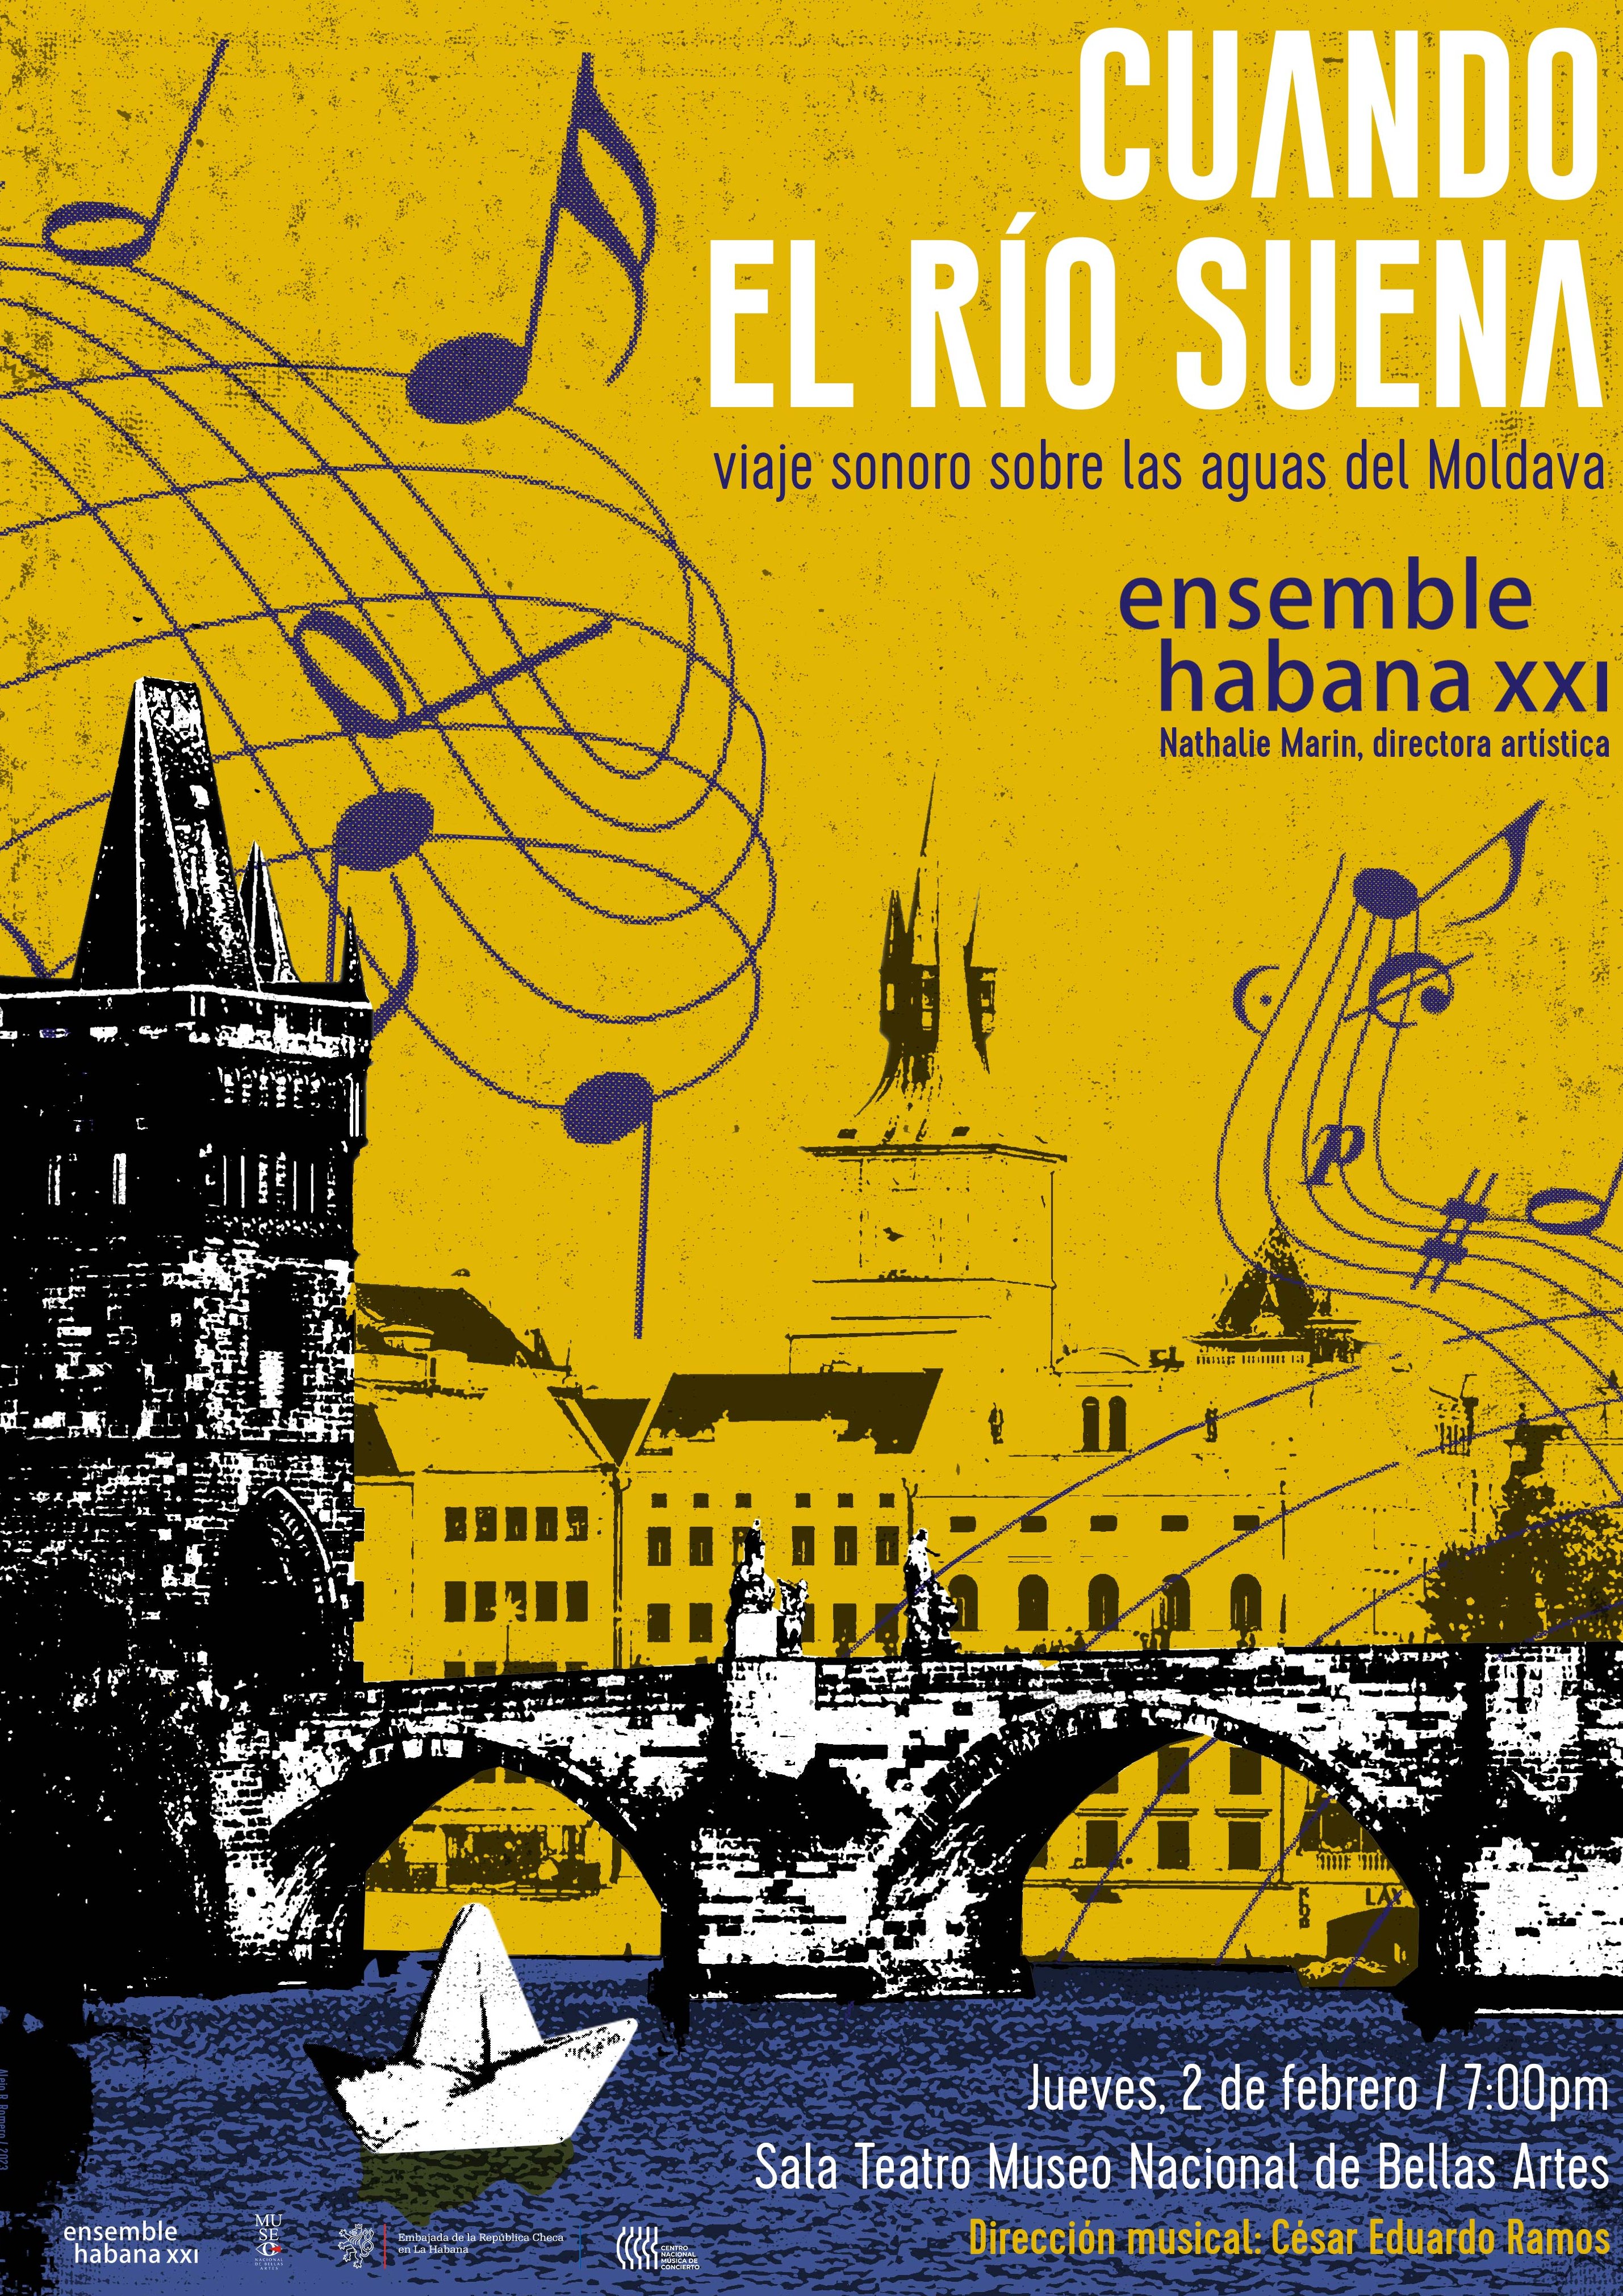 El concierto invita a realizar un paseo por el repertorio musical clásico de la República Checa durante el siglo XX.